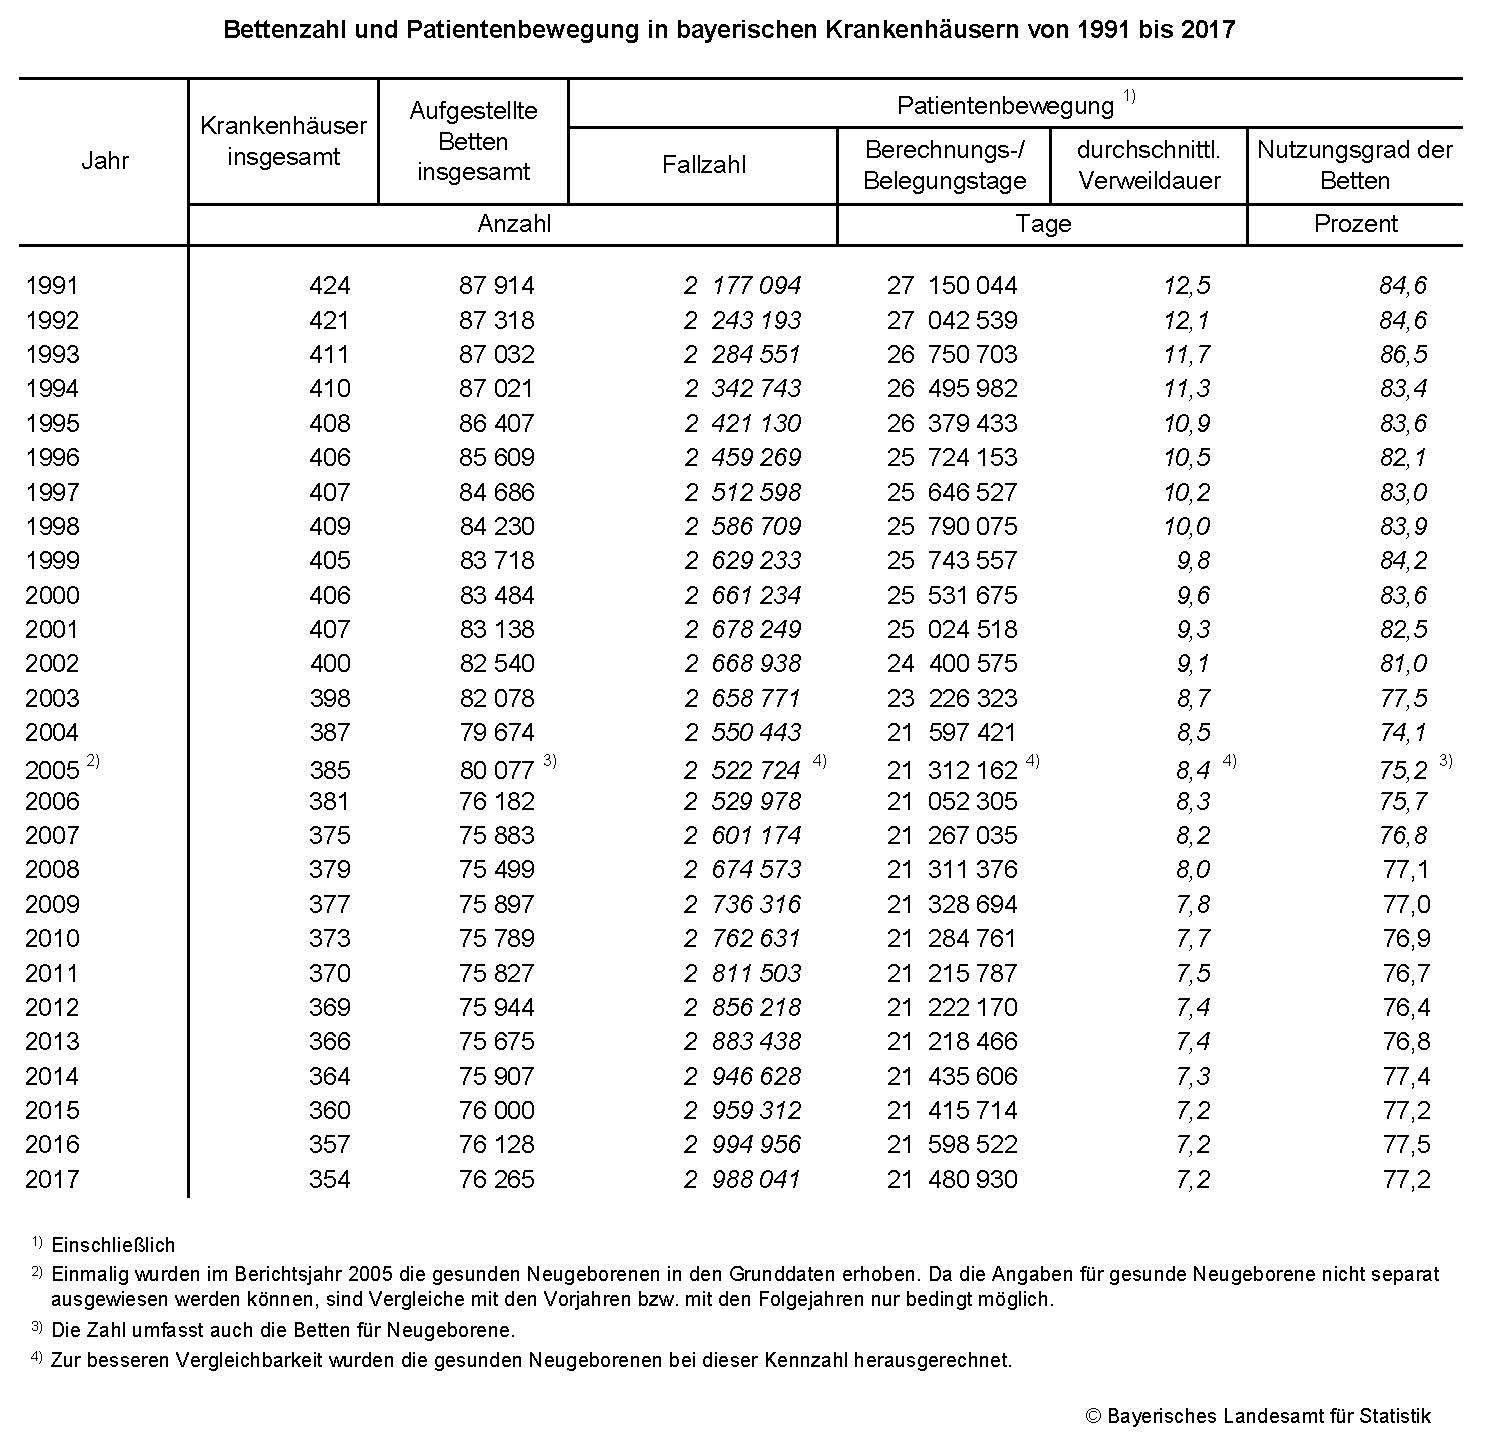 Bettenzahl und Patientenbewegung in bayerischen Krankenhäusern von 1991 bis 2017